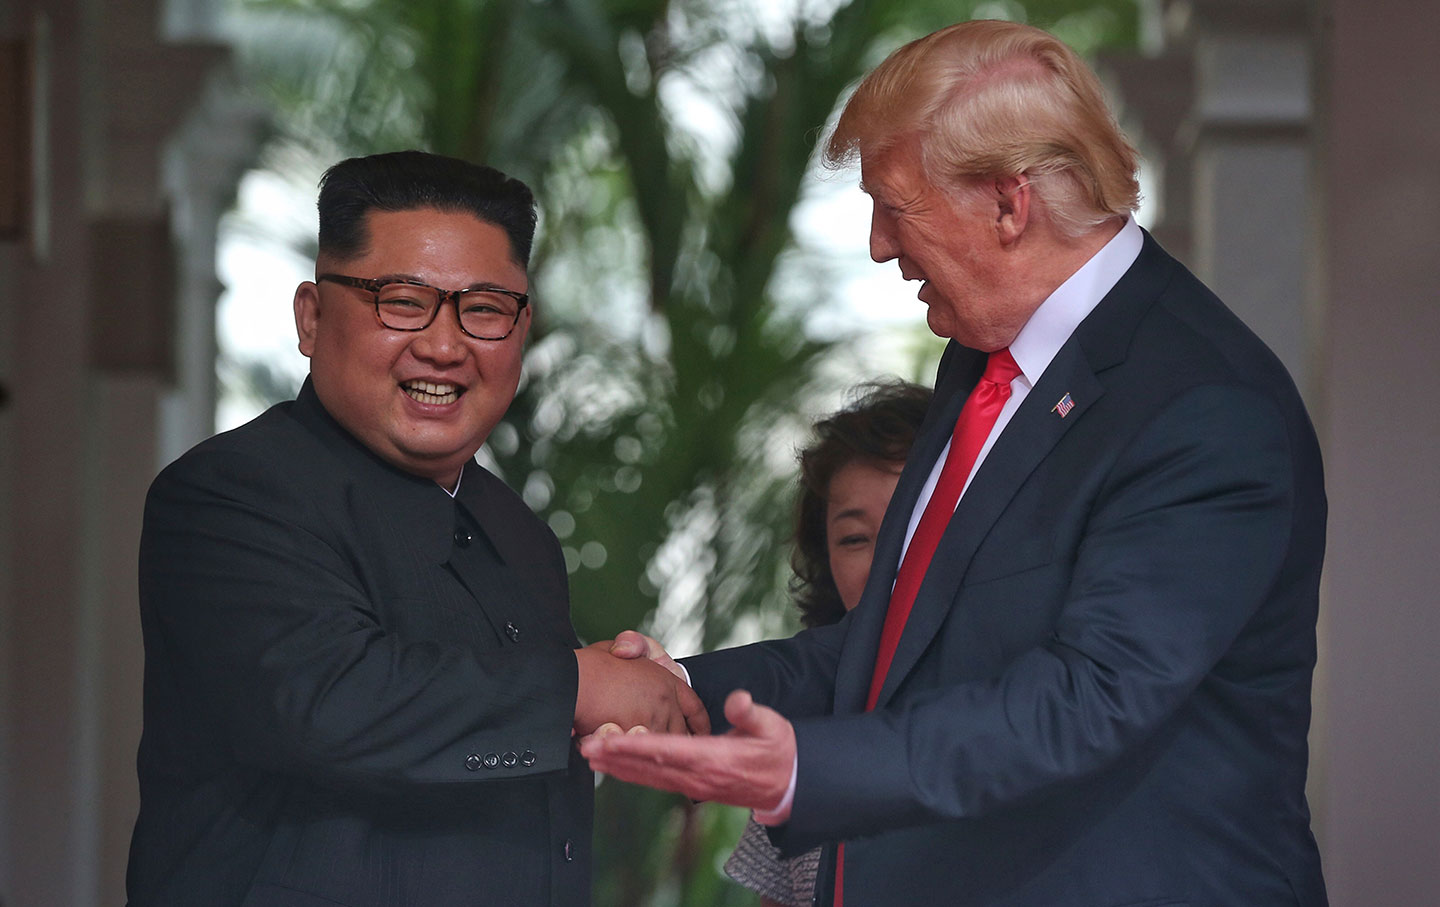 Trump and Kim handshake in Singapore